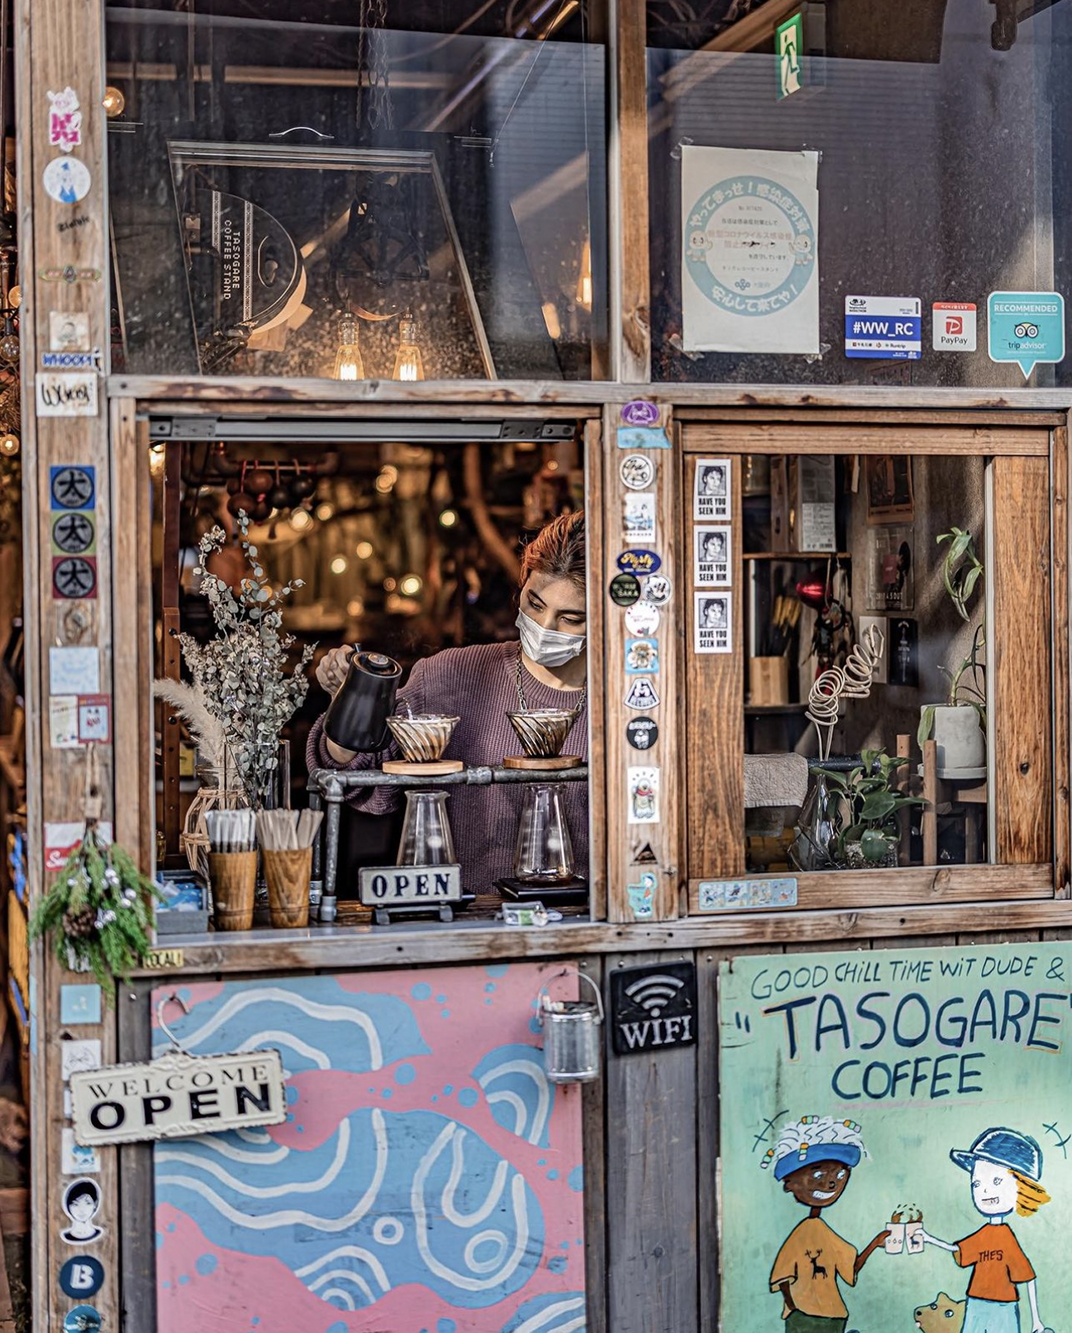 杂货铺风格咖啡馆Tasogare Coffee 日本 上海 咖啡馆 复古 怀旧 木材 袖珍店 logo设计 vi设计 空间设计